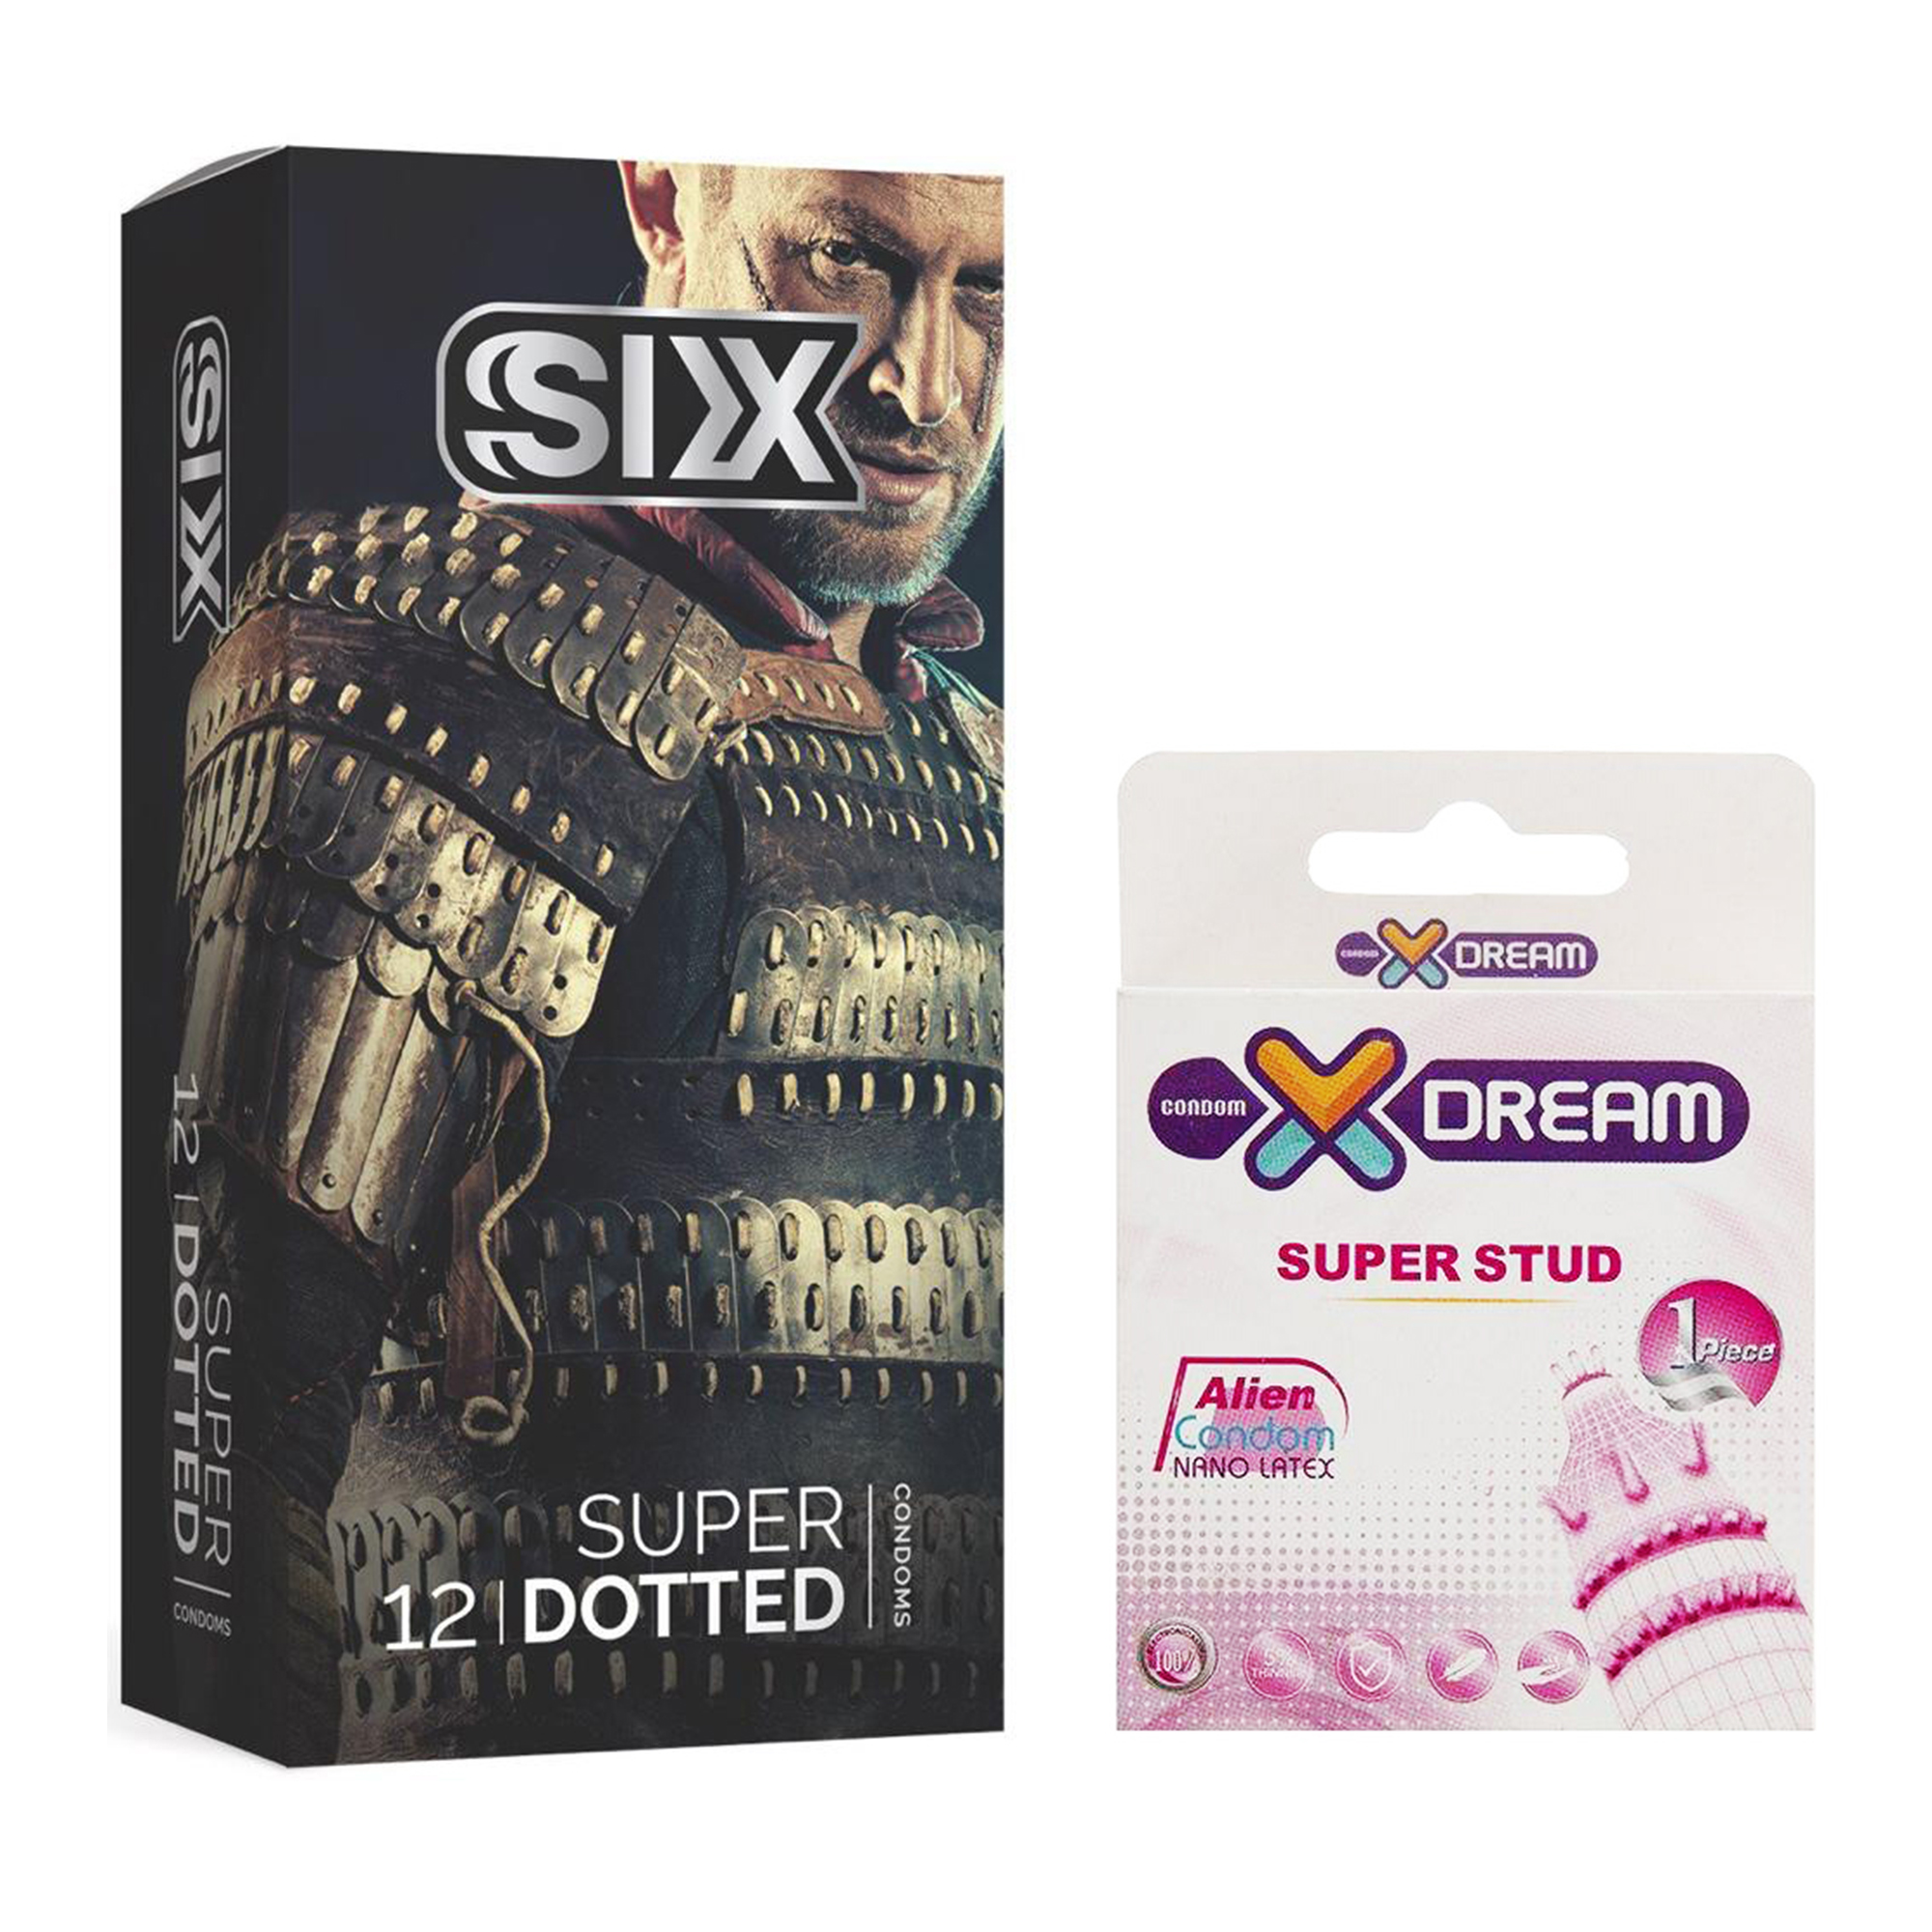 کاندوم سیکس مدل Super Dotted بسته 12 عددی به همراه کاندوم ایکس دریم مدل Super Stud